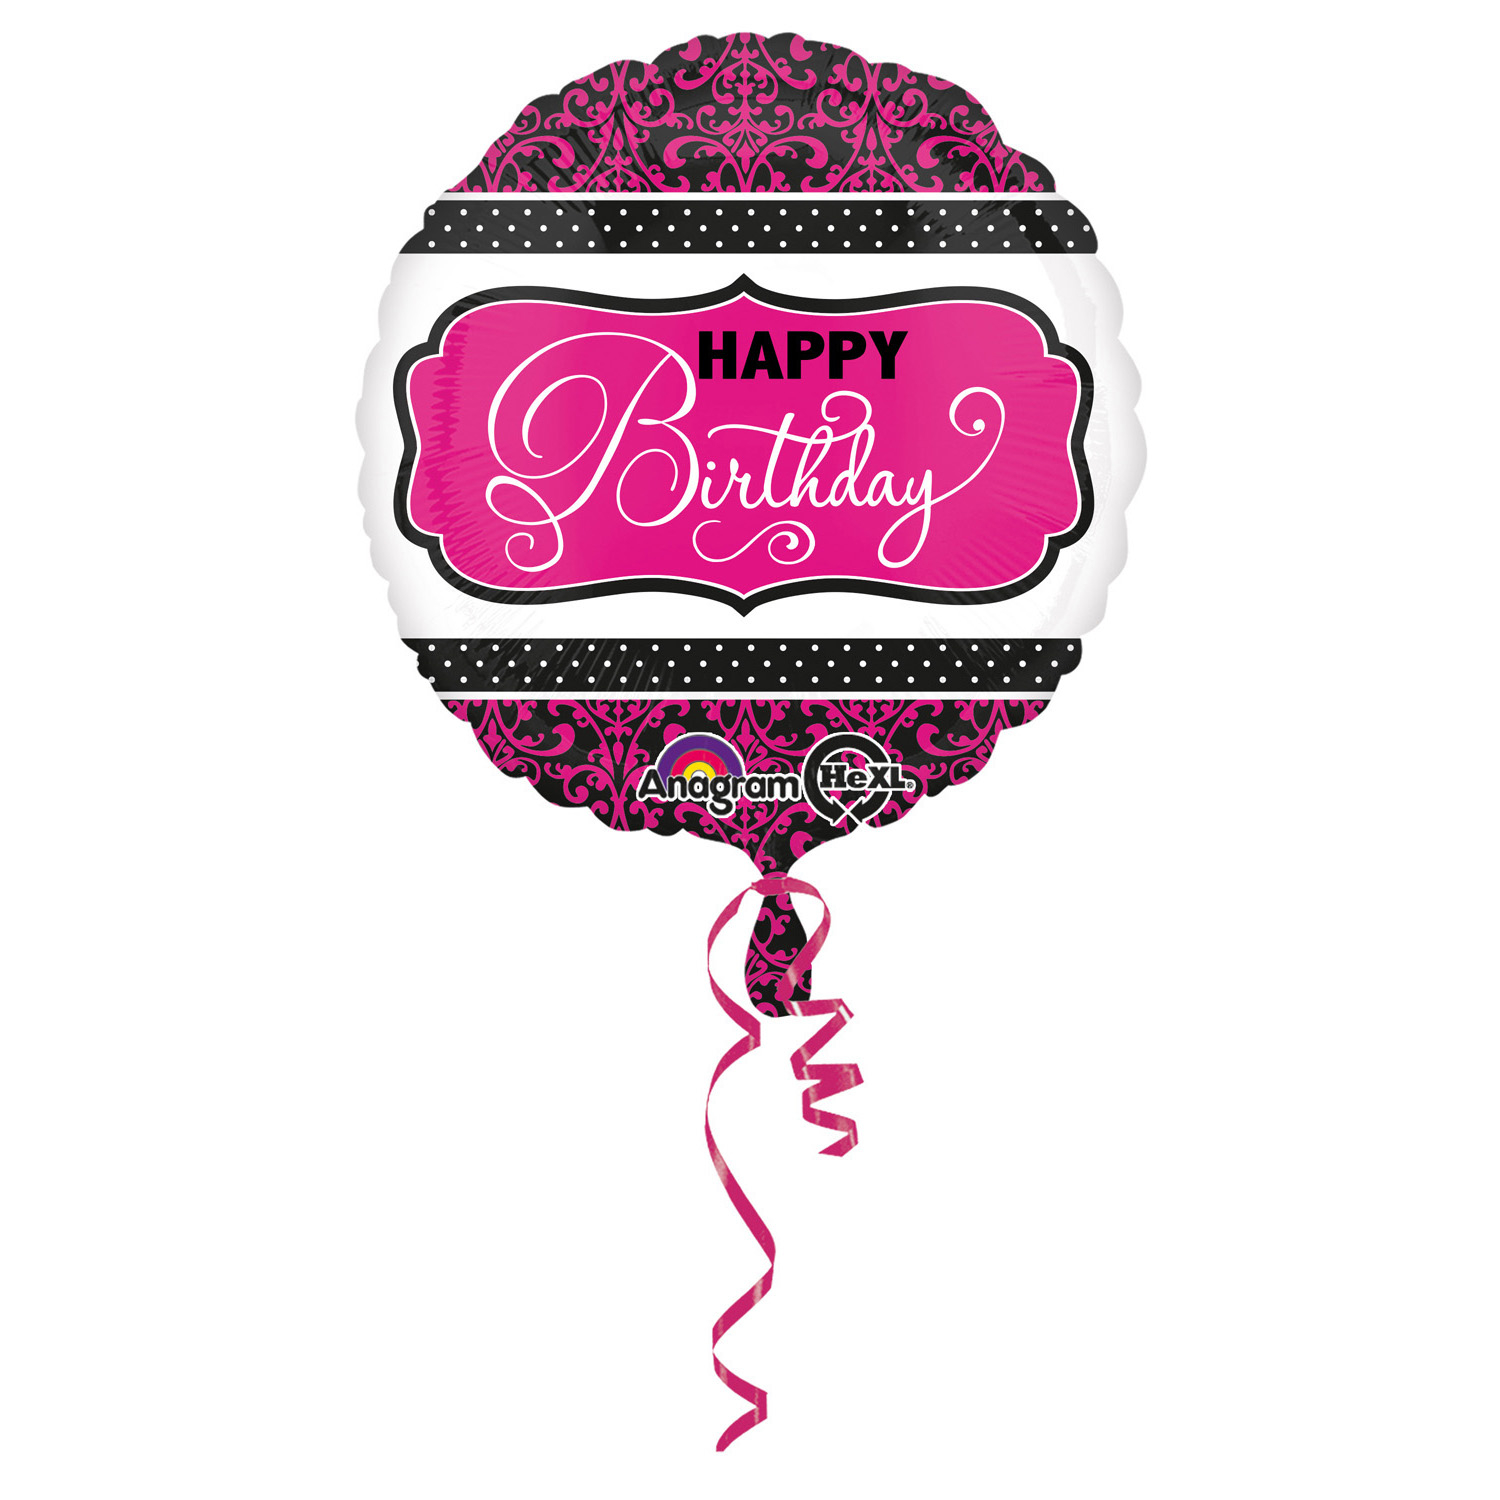 Balon foliowy Happy Birthday różowo czarny z helem 43cm, ANAGRAM